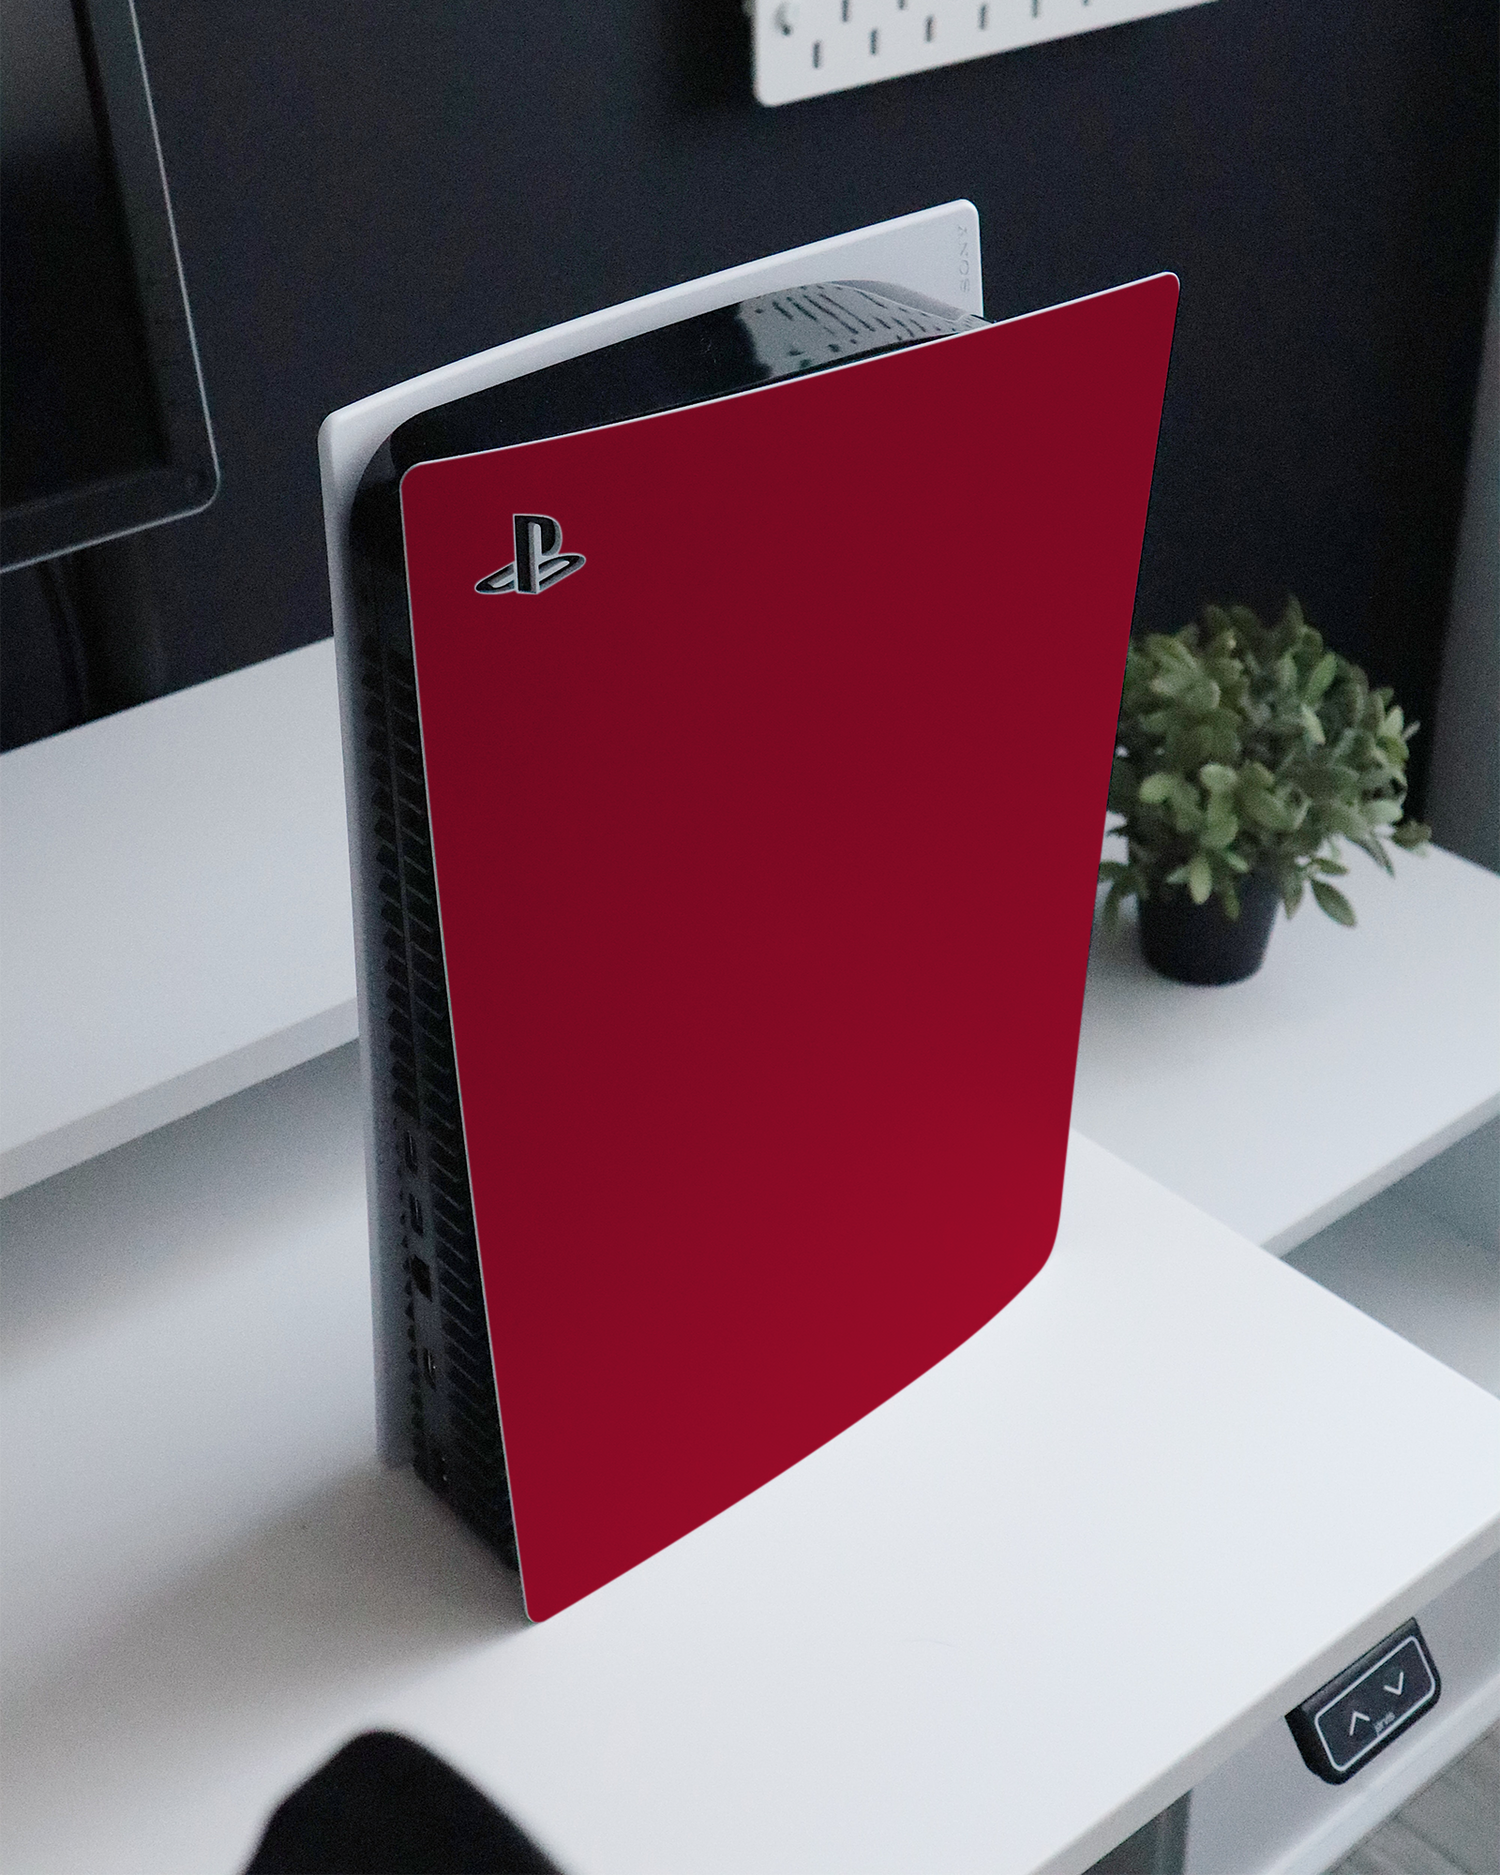 RED Konsolen Aufkleber für Sony PlayStation 5 auf einem Sideboard